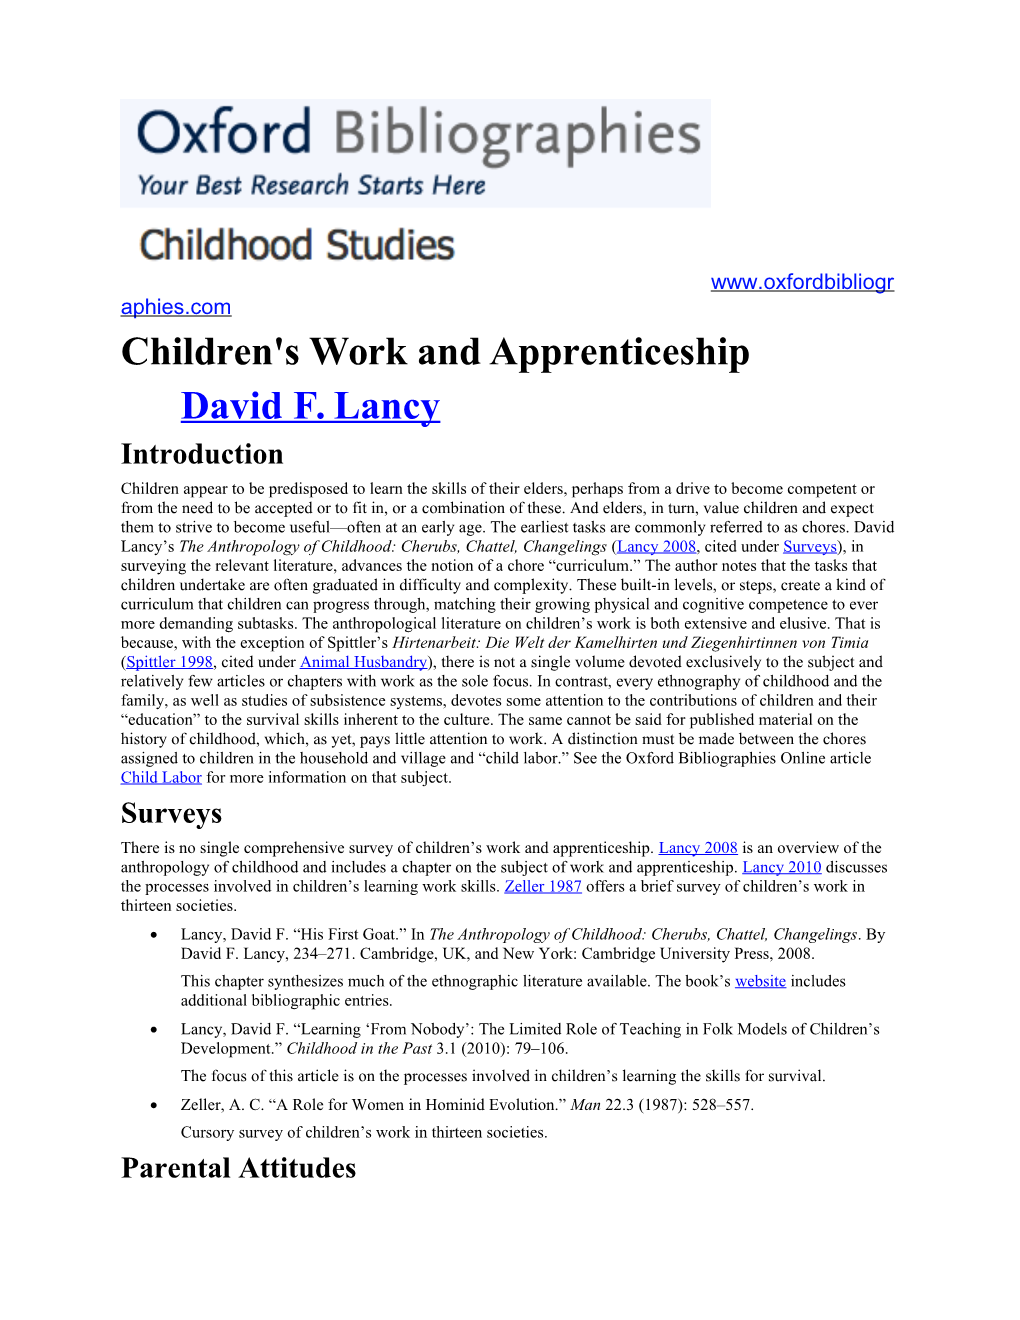 Children's Work and Apprenticeship